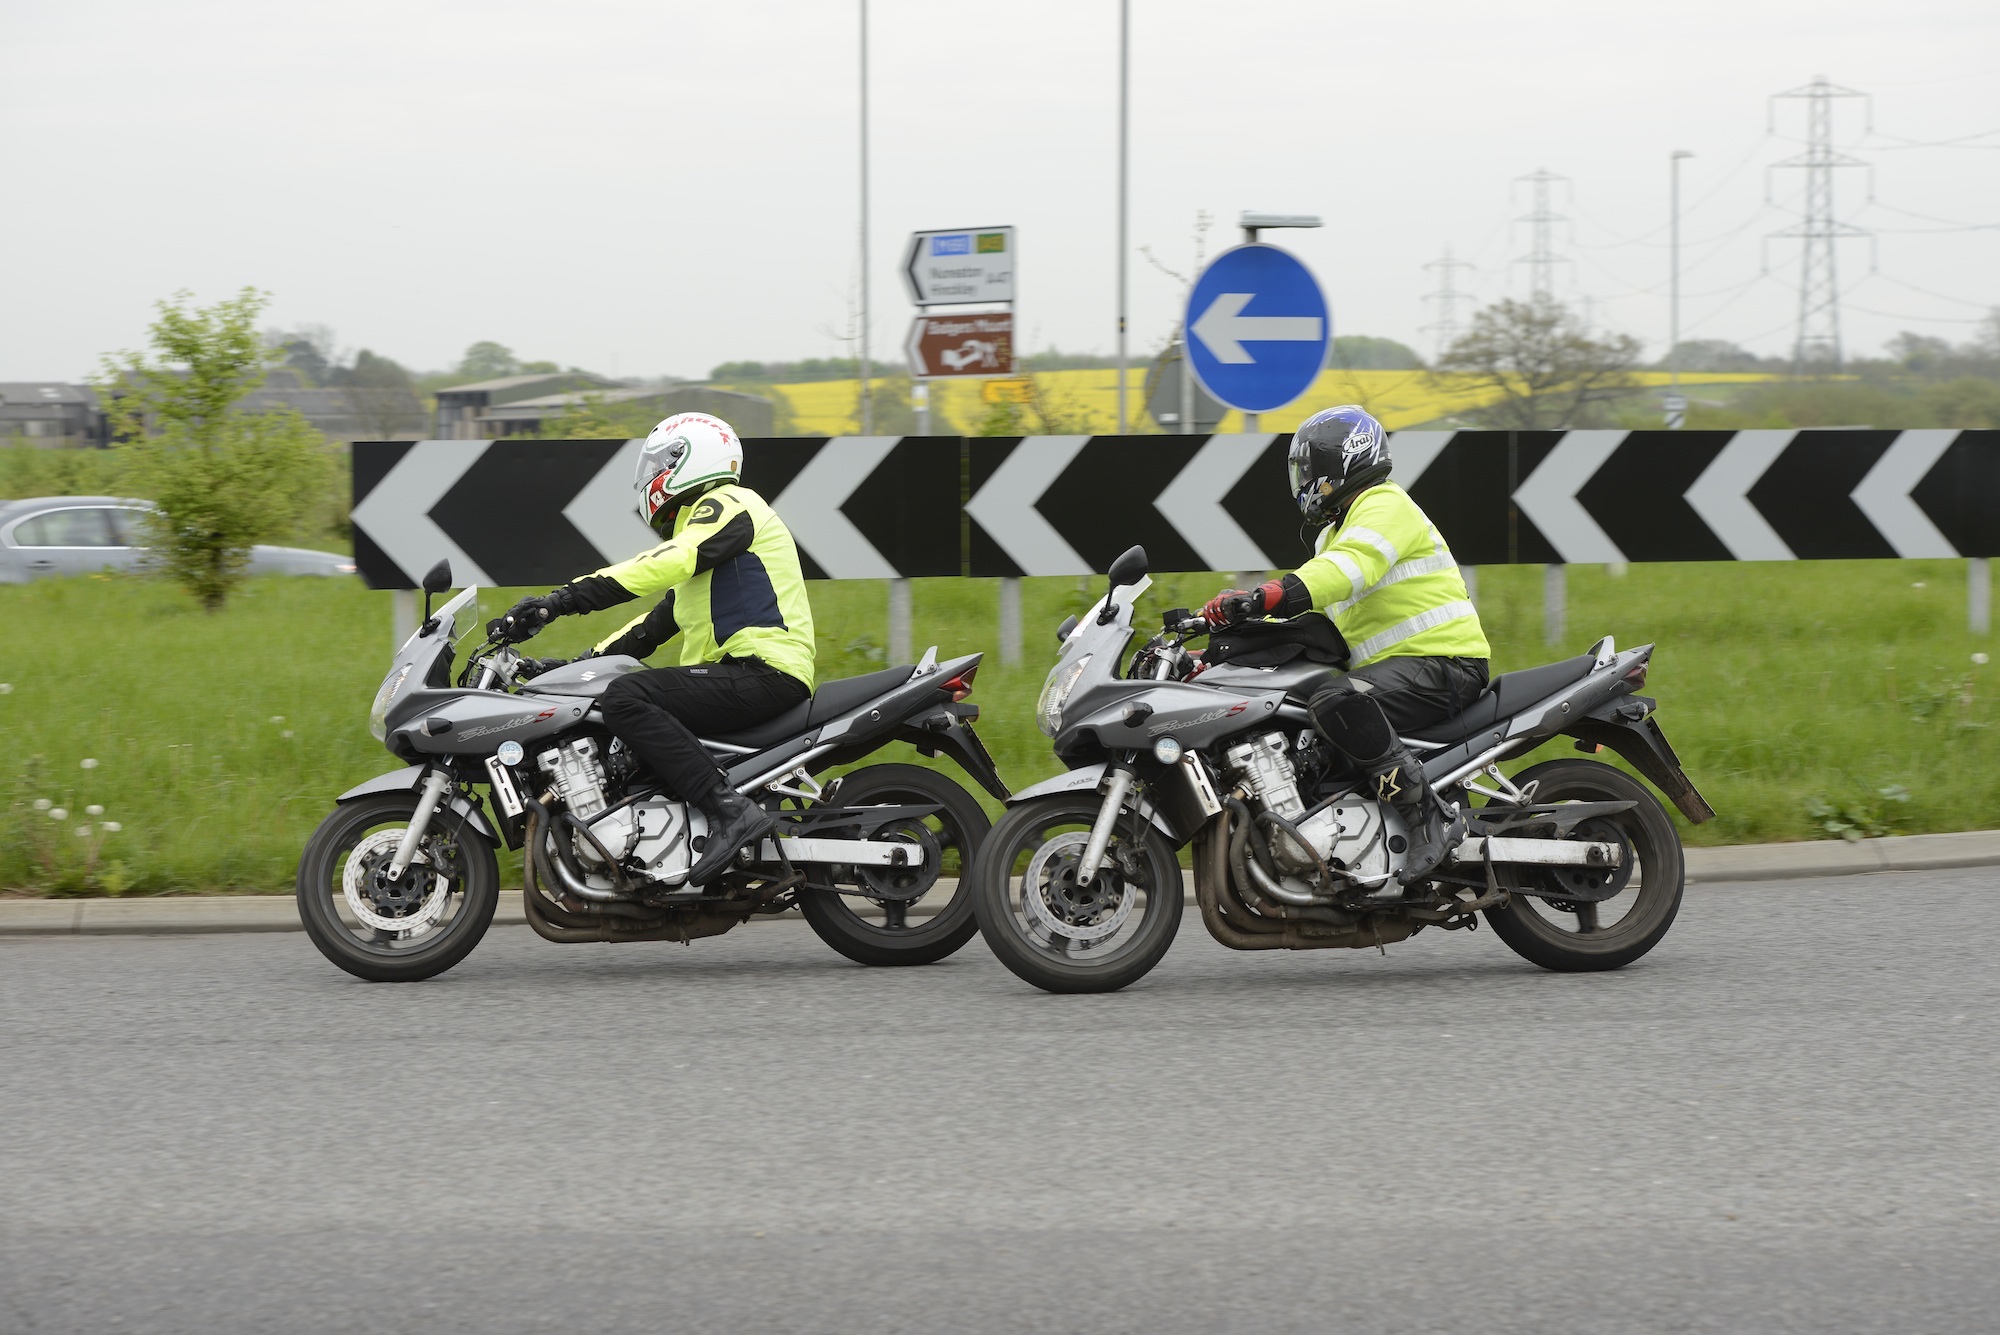 Motorbike test in London, Milton Keynes